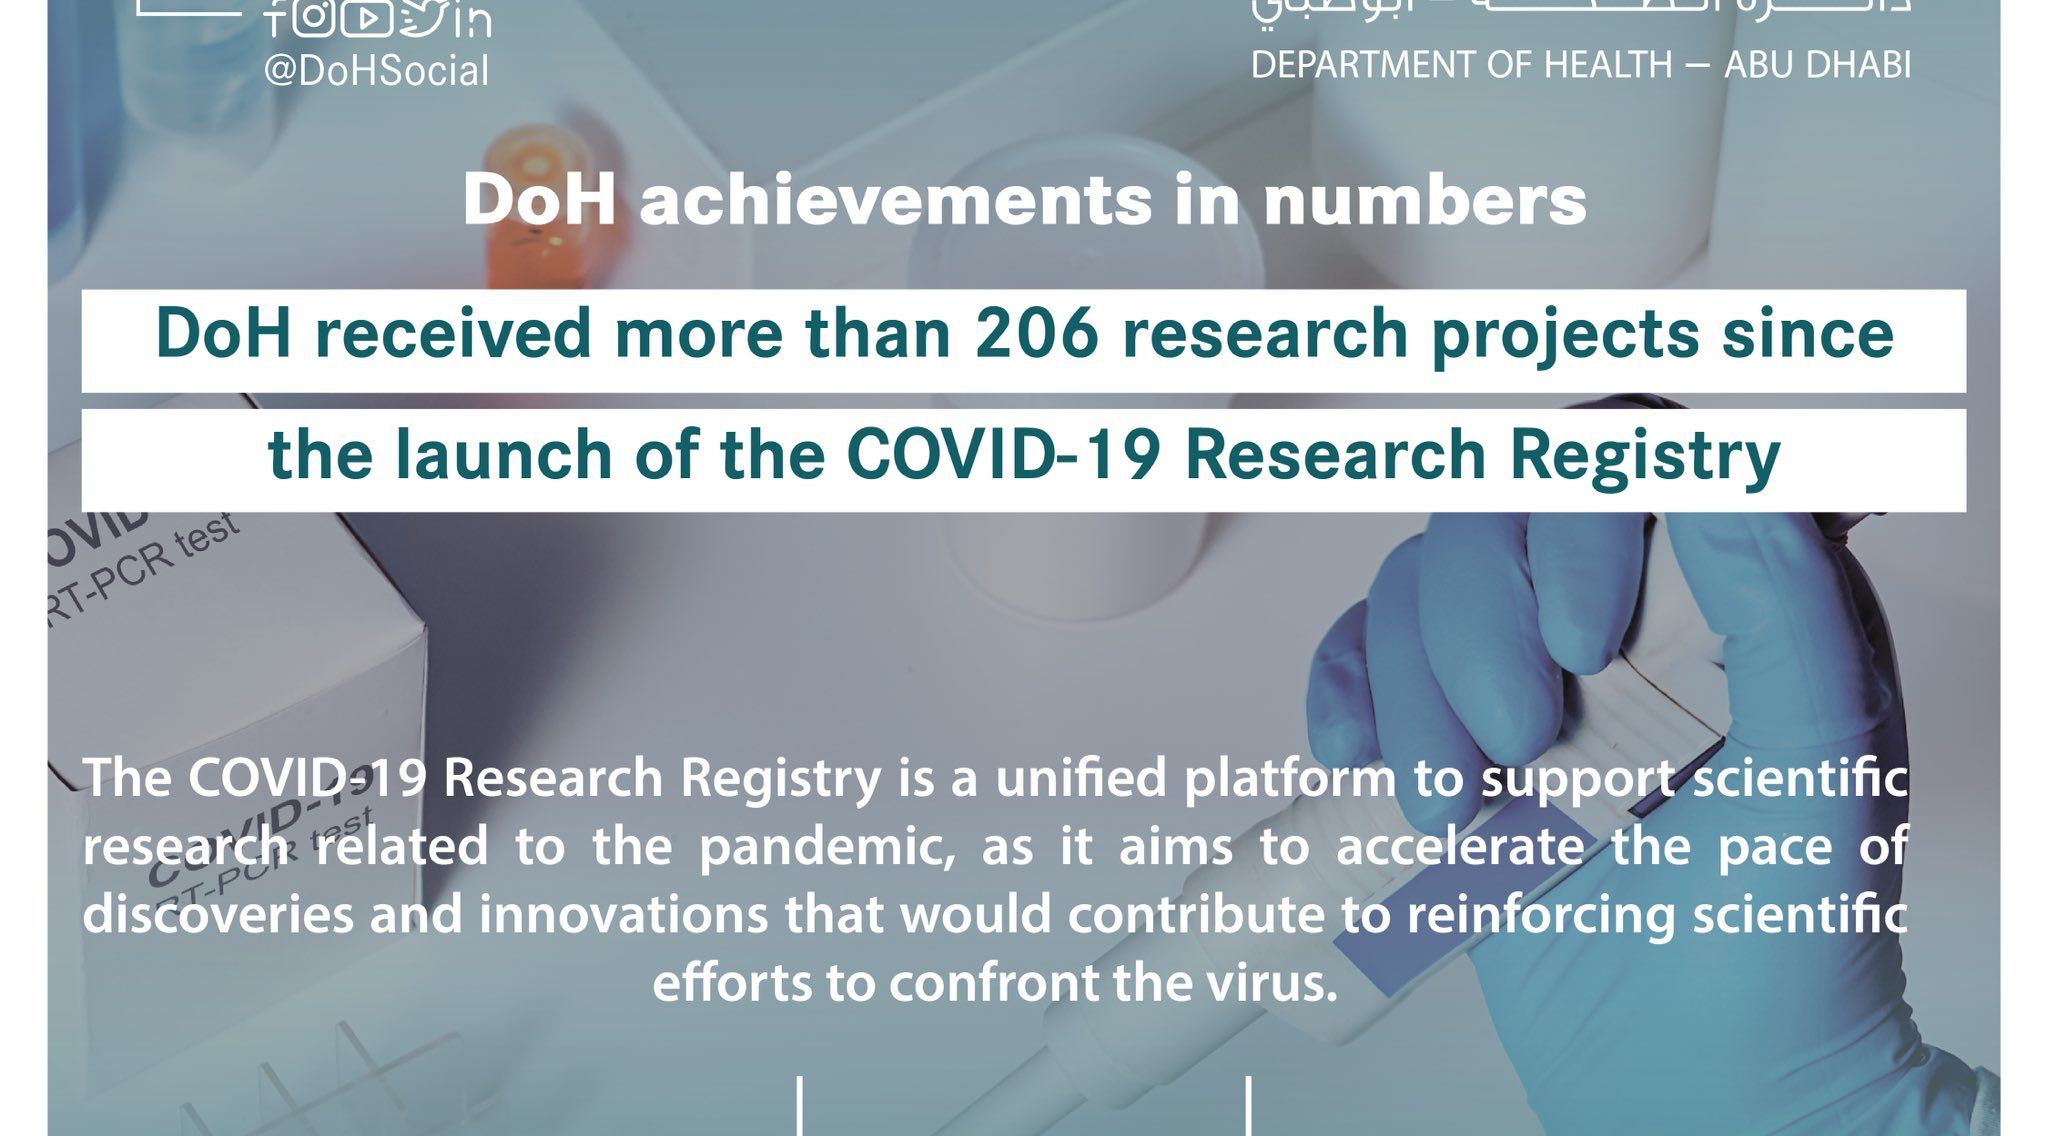 تقديم العديد من الأبحاث لاحتواء انتشار فيروس كورونا